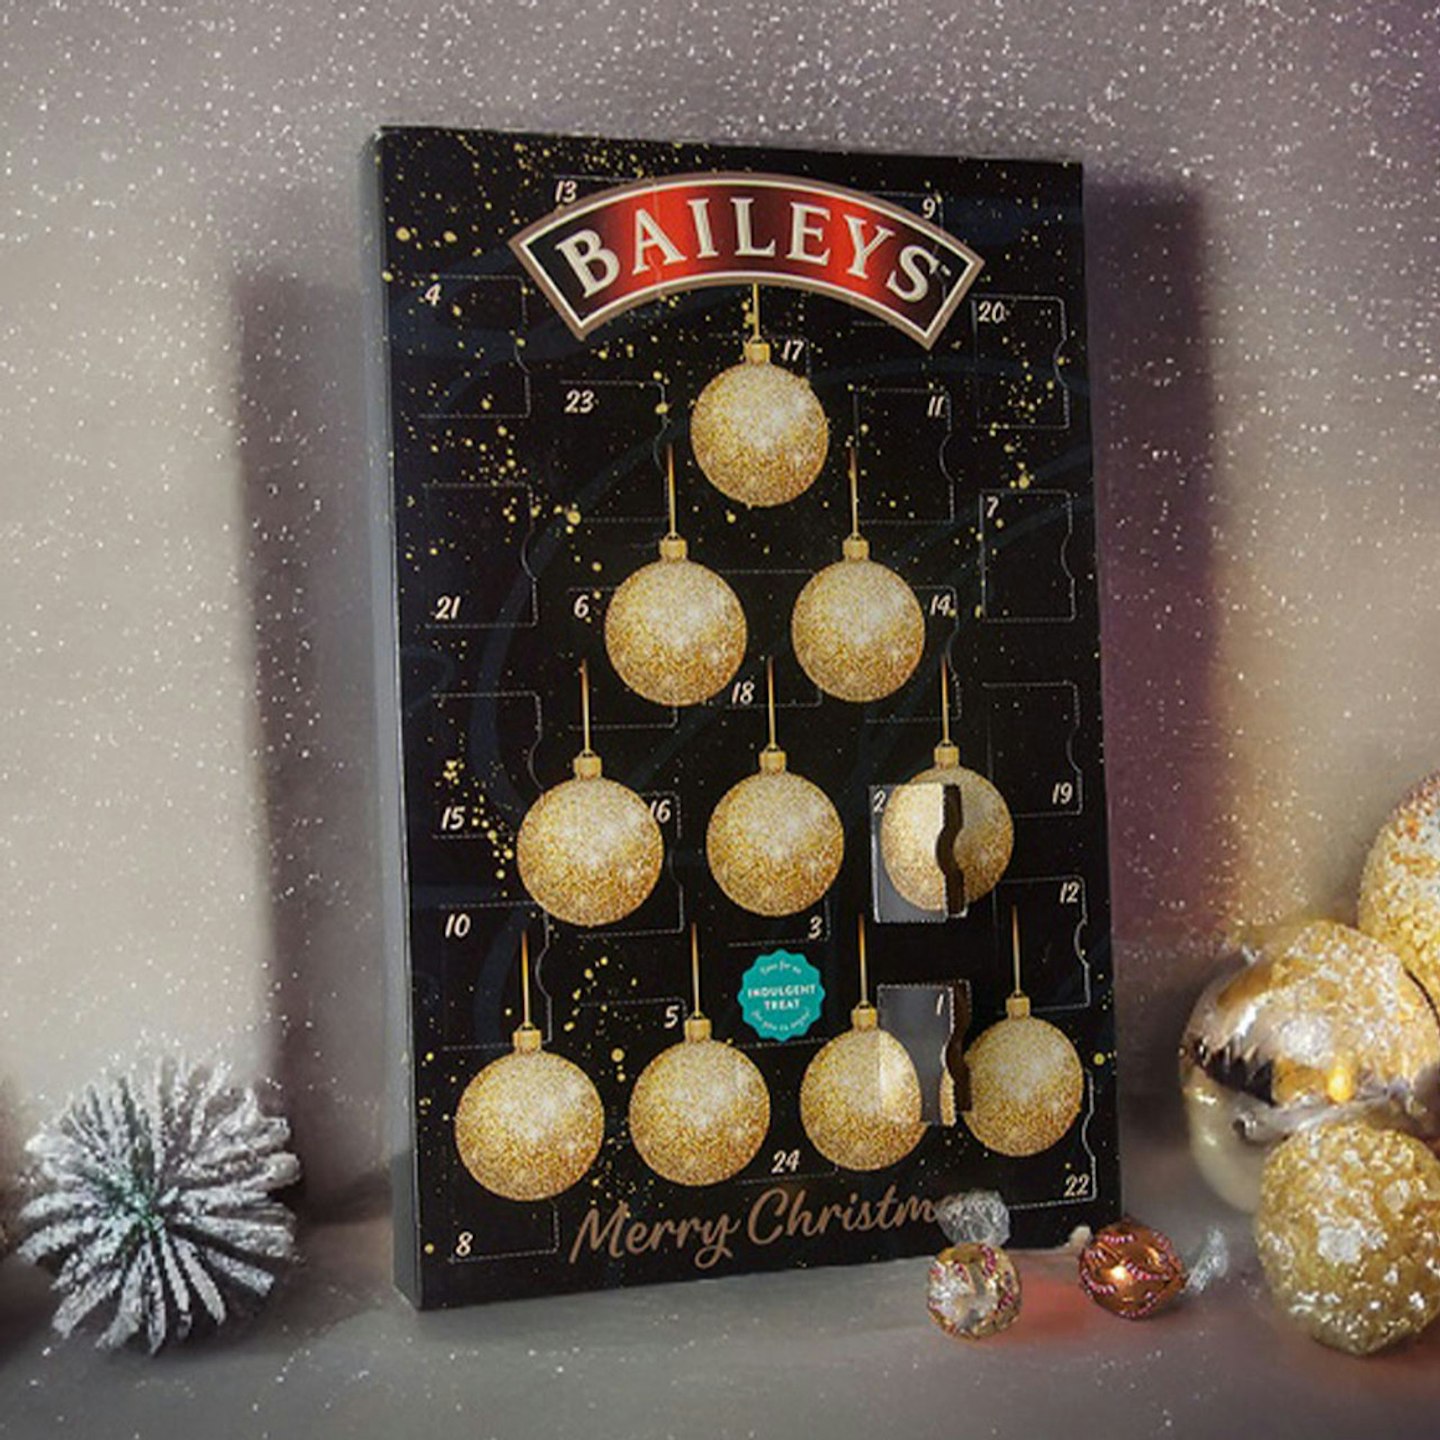 Baileys - Adult advent calendars